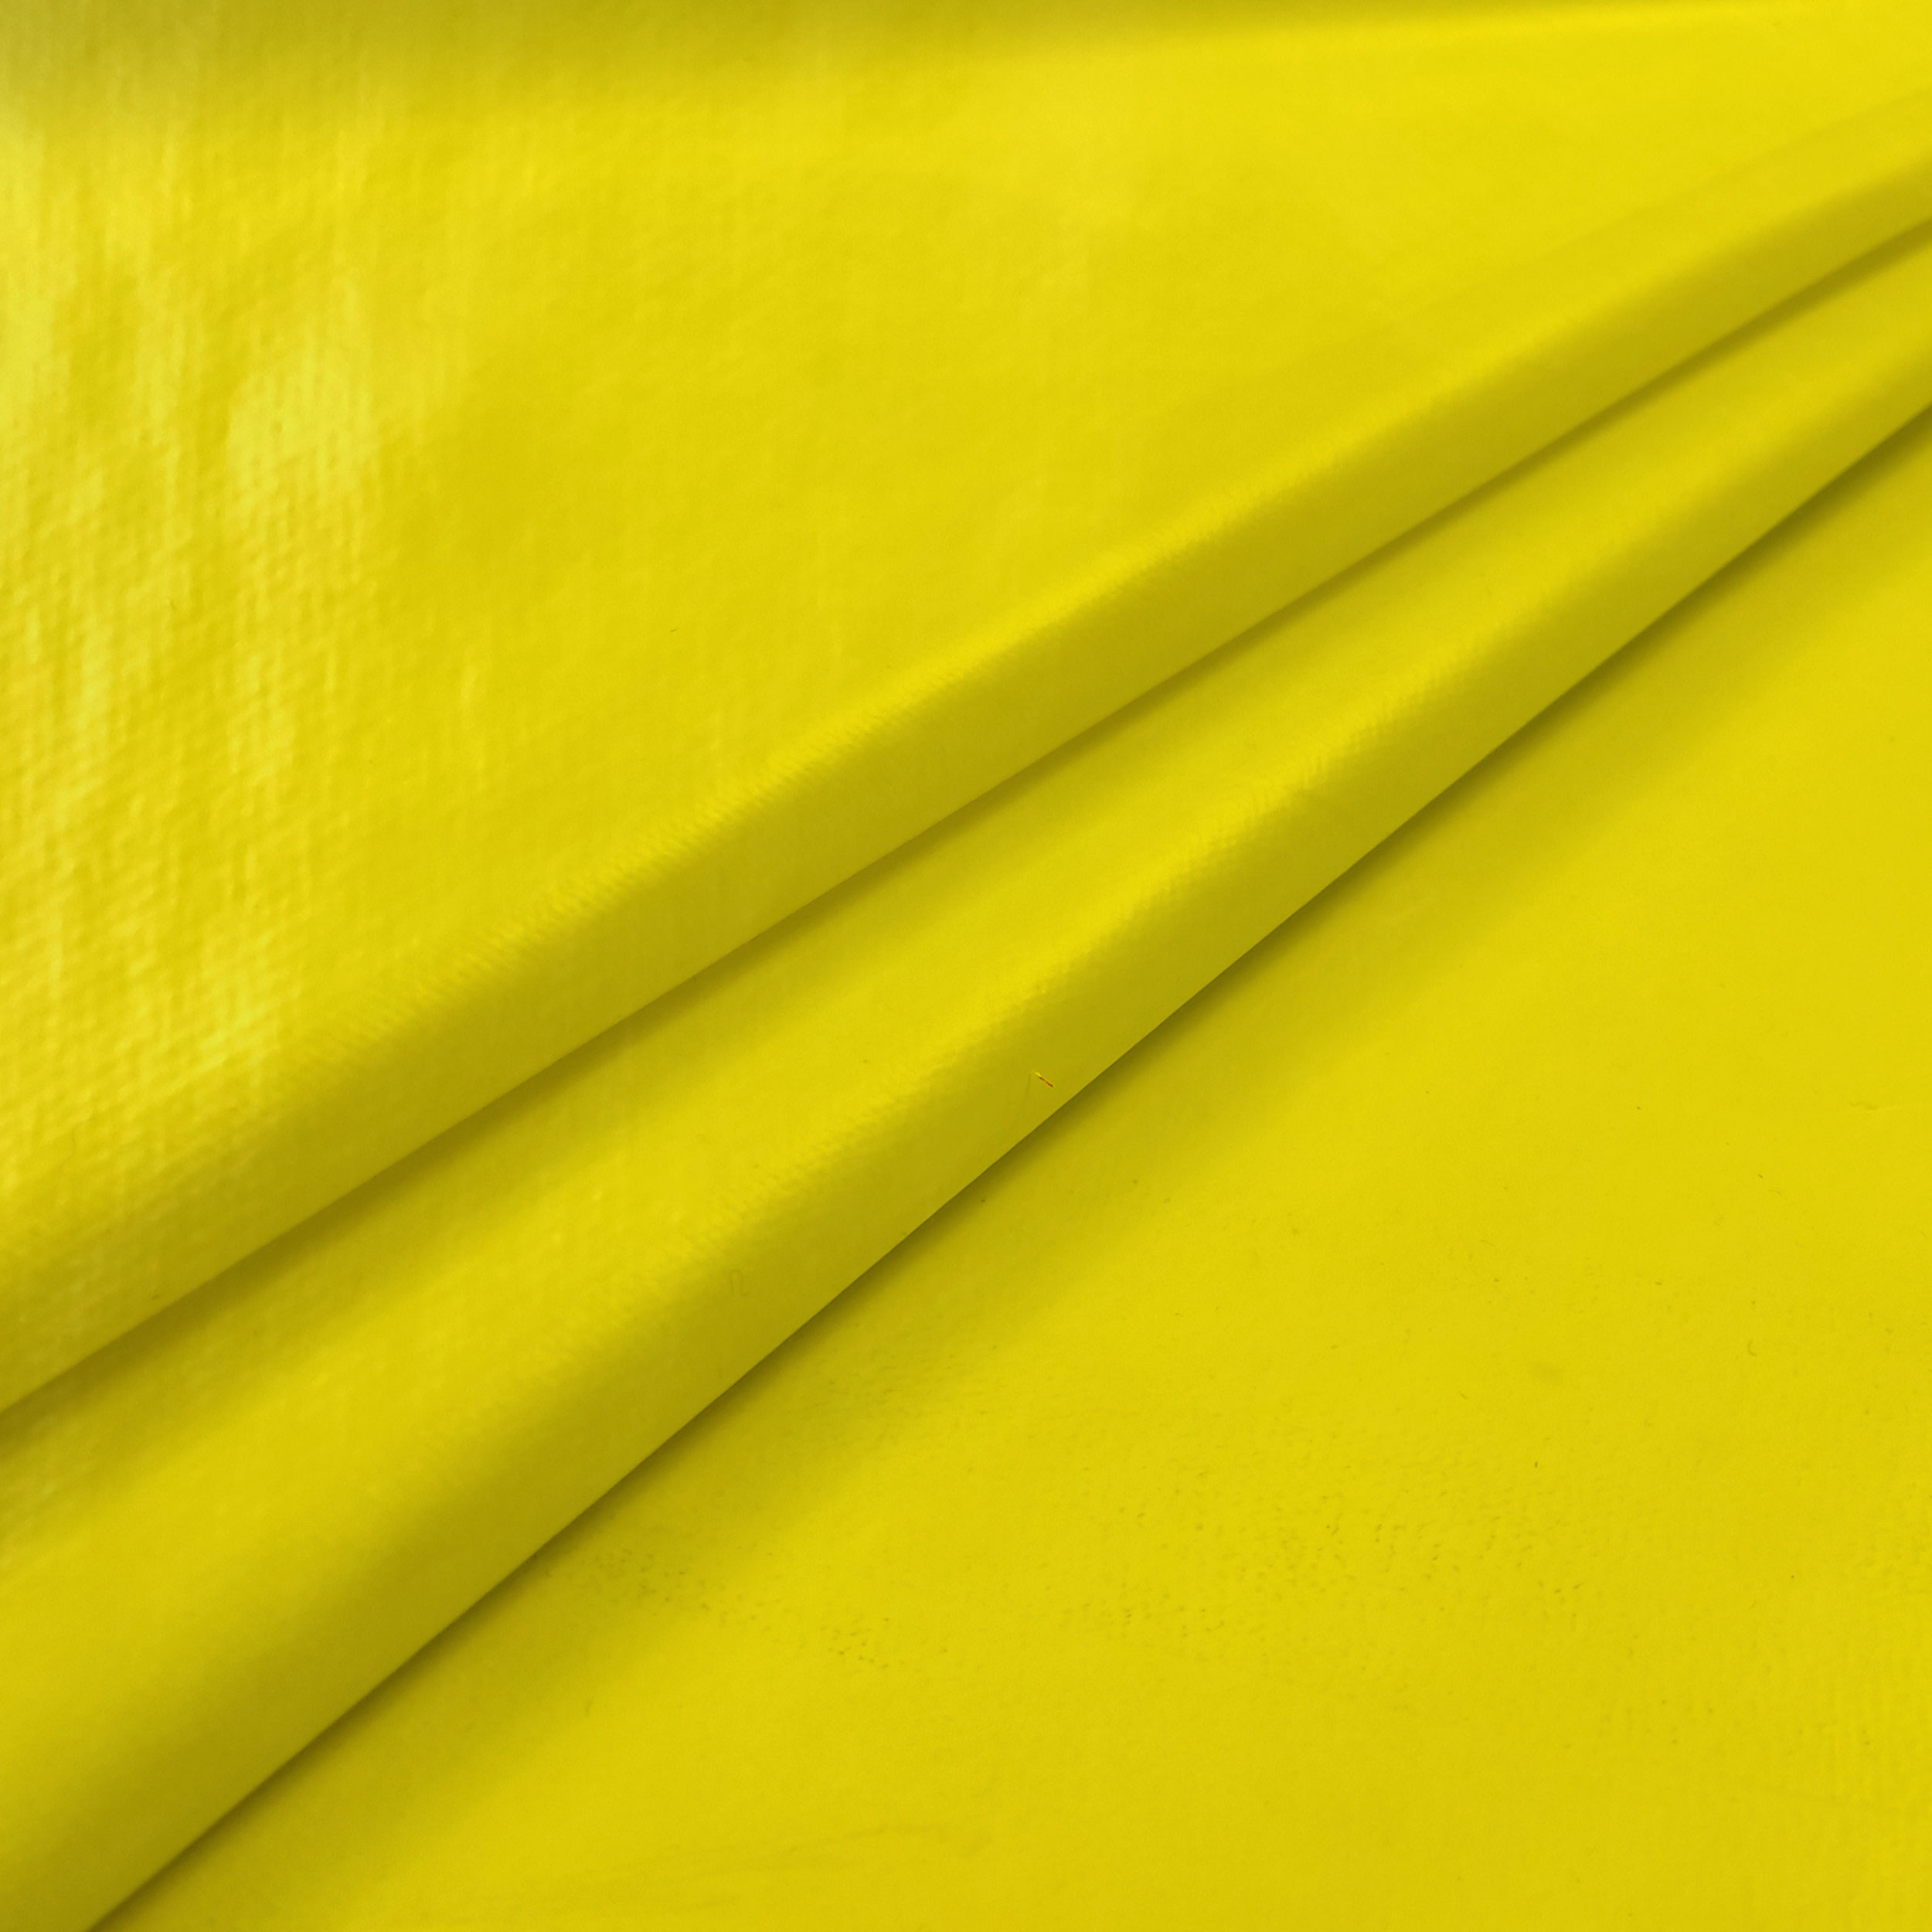 tessuto-accoppiato-per-tovagliati-giallo